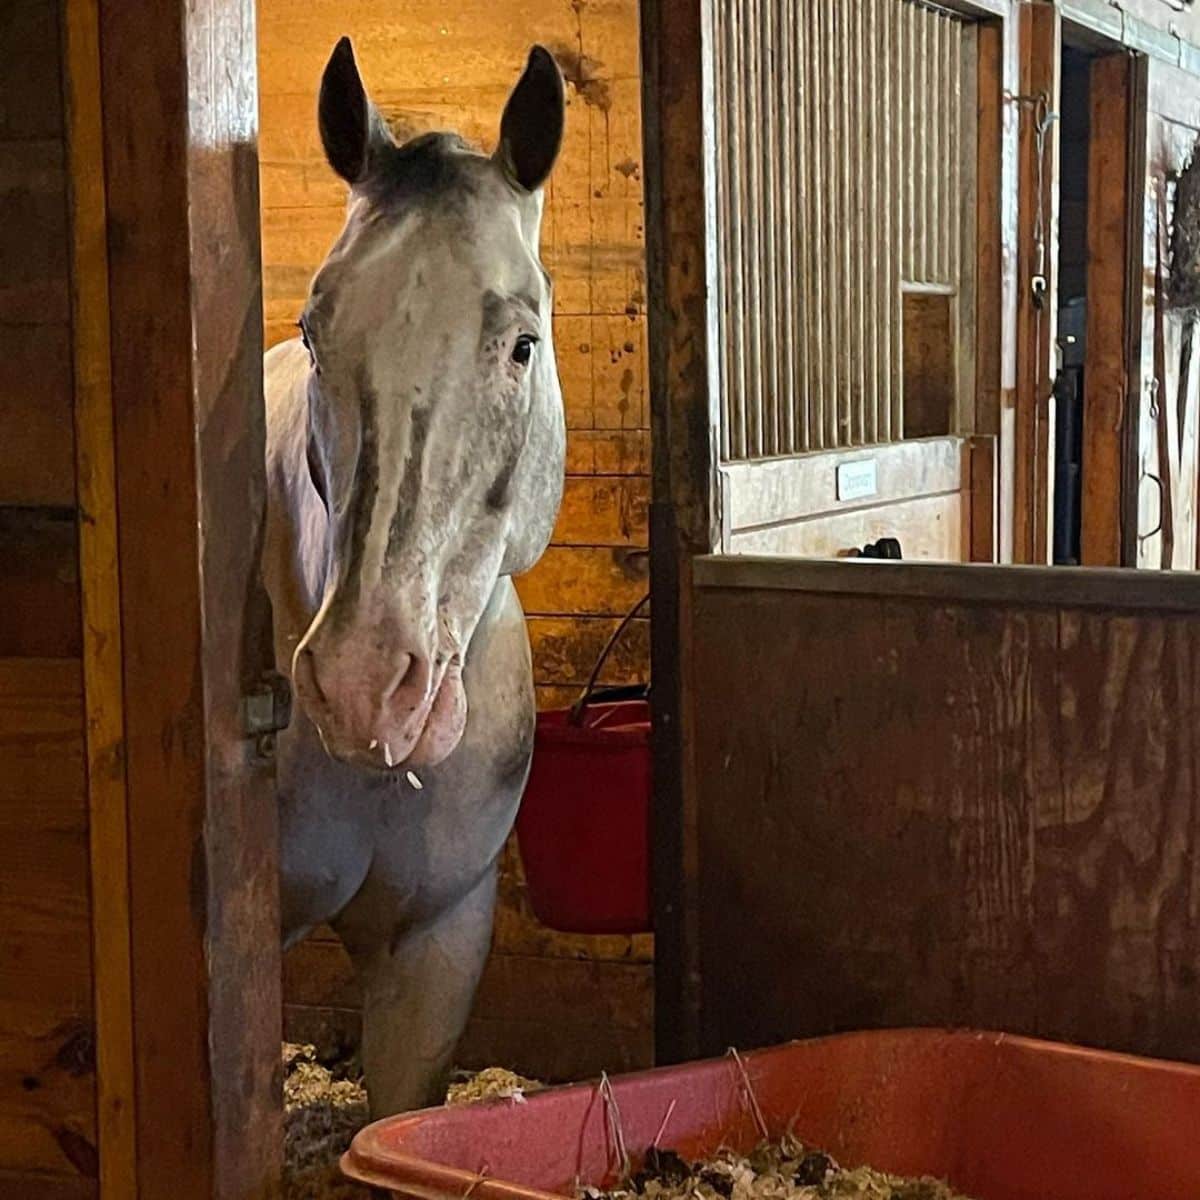 A curious-looking gray Colorado Ranger horse in a barn.